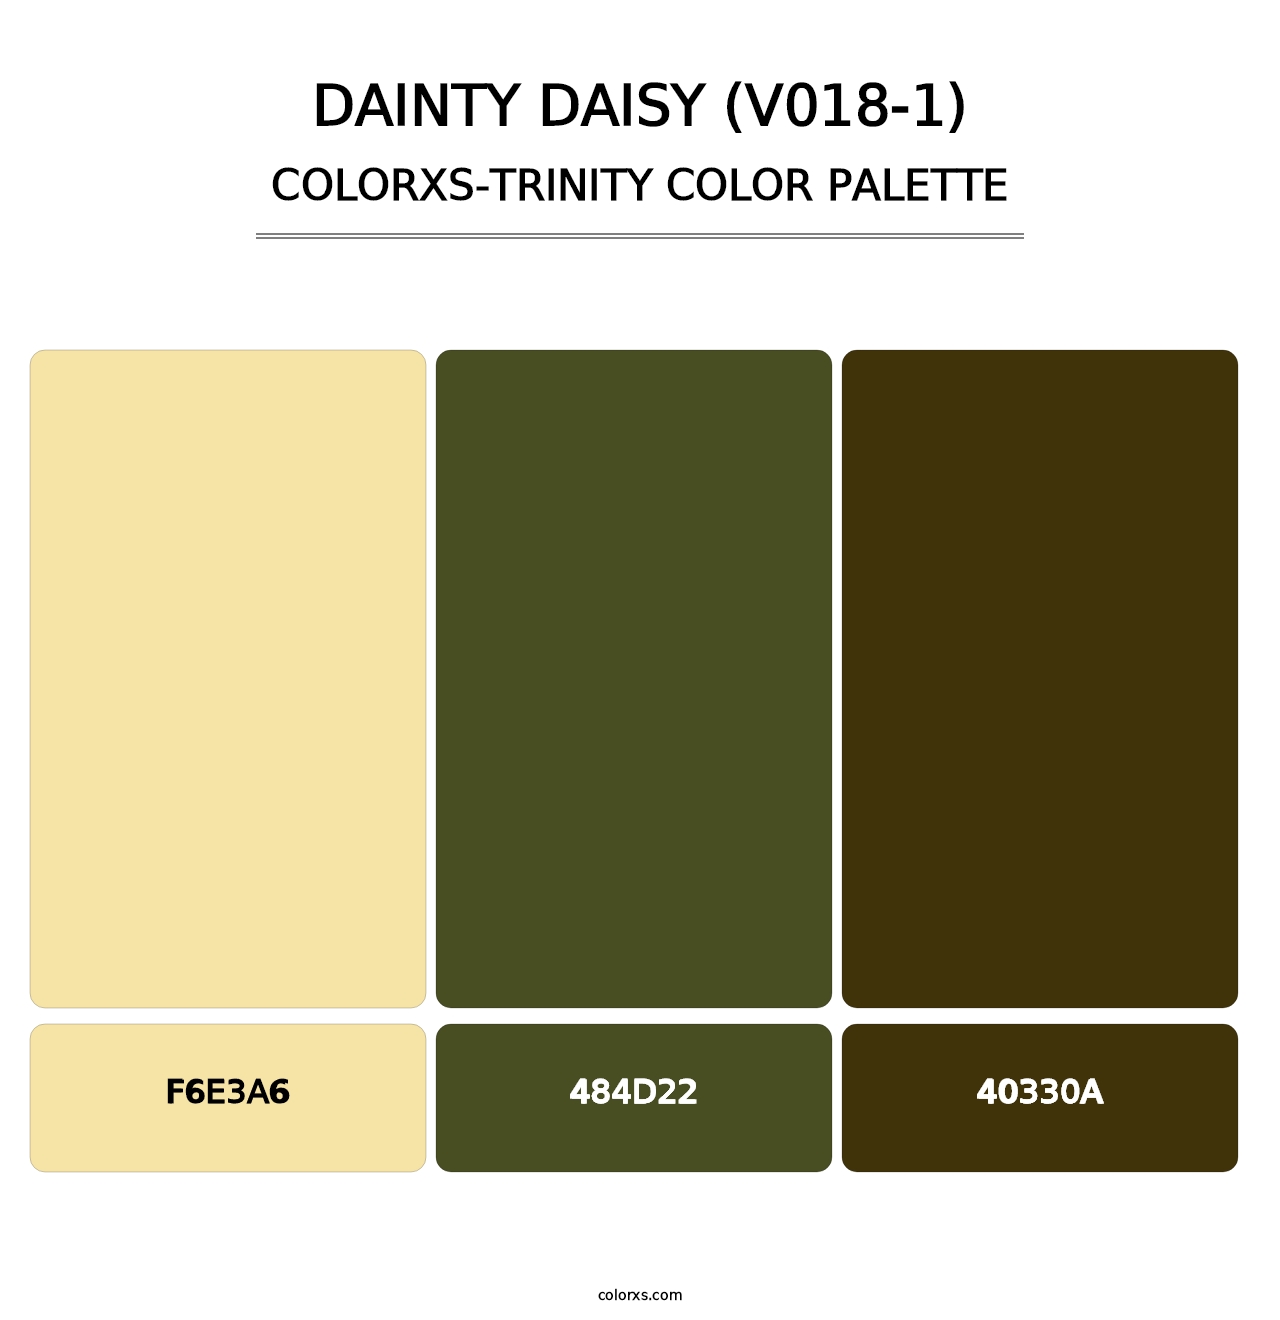 Dainty Daisy (V018-1) - Colorxs Trinity Palette